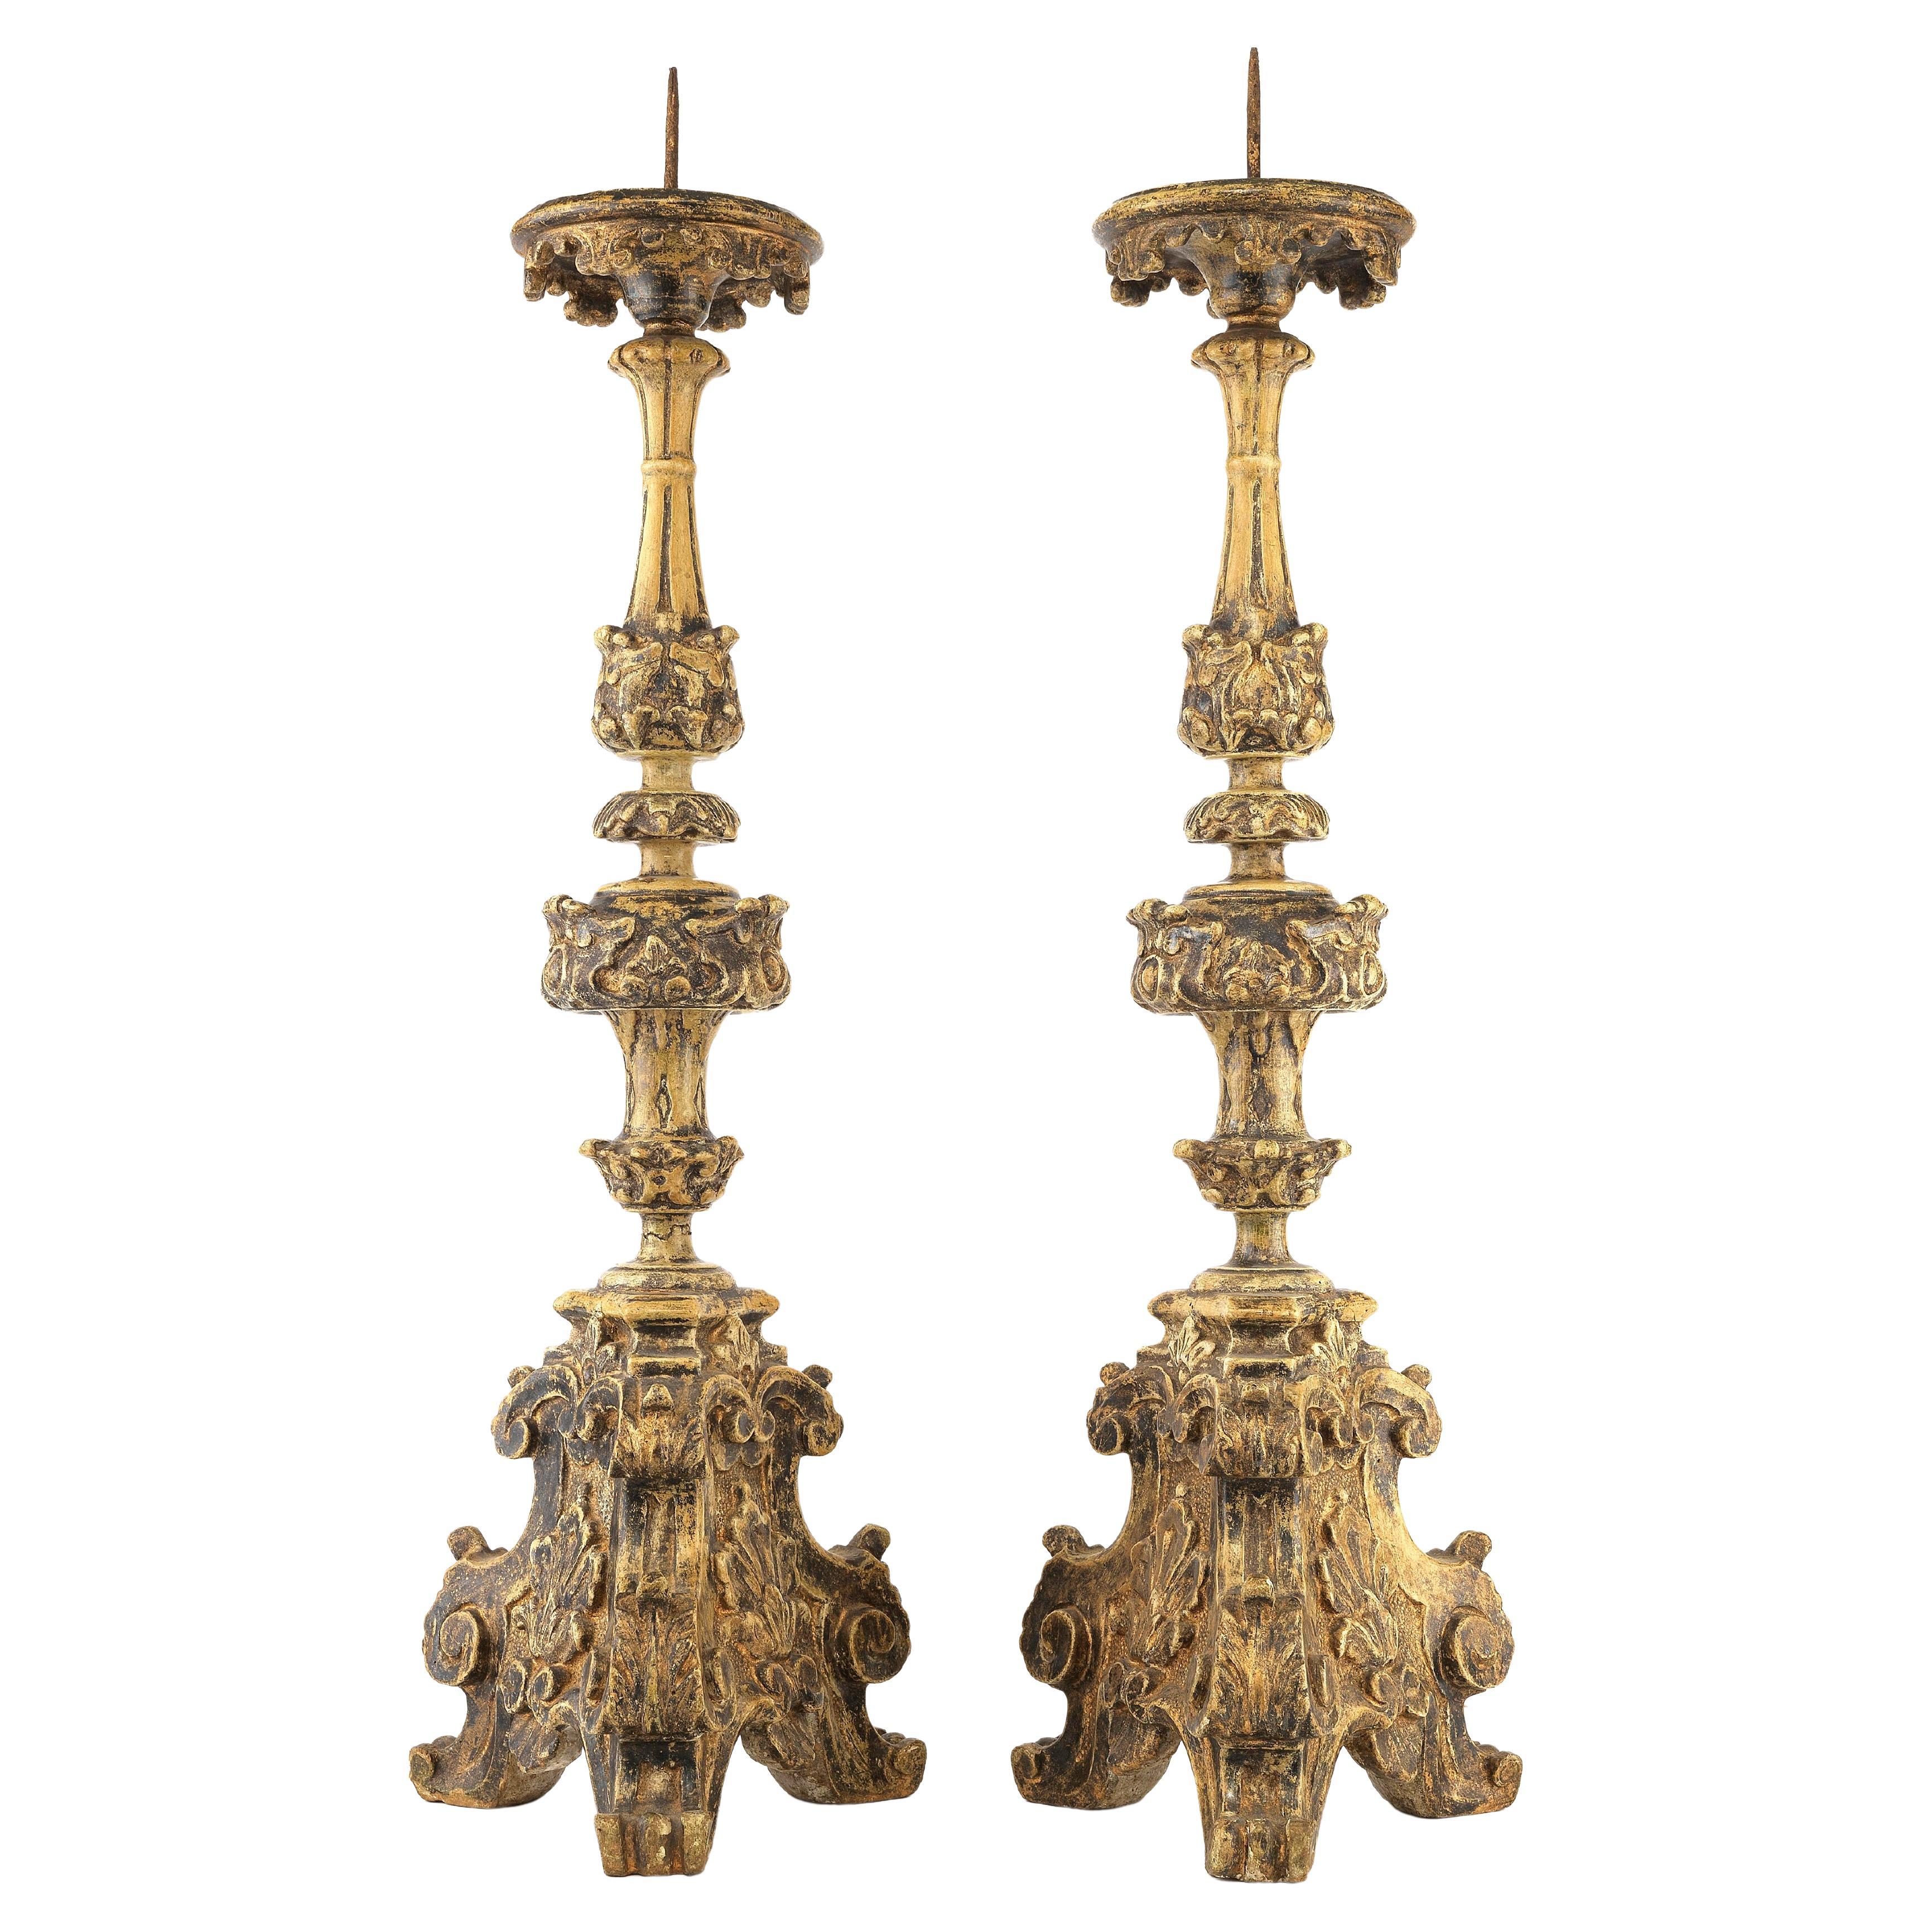 Paar italienische Kandelaber aus Gips und Holz im Stil des frühen 18. Jahrhunderts